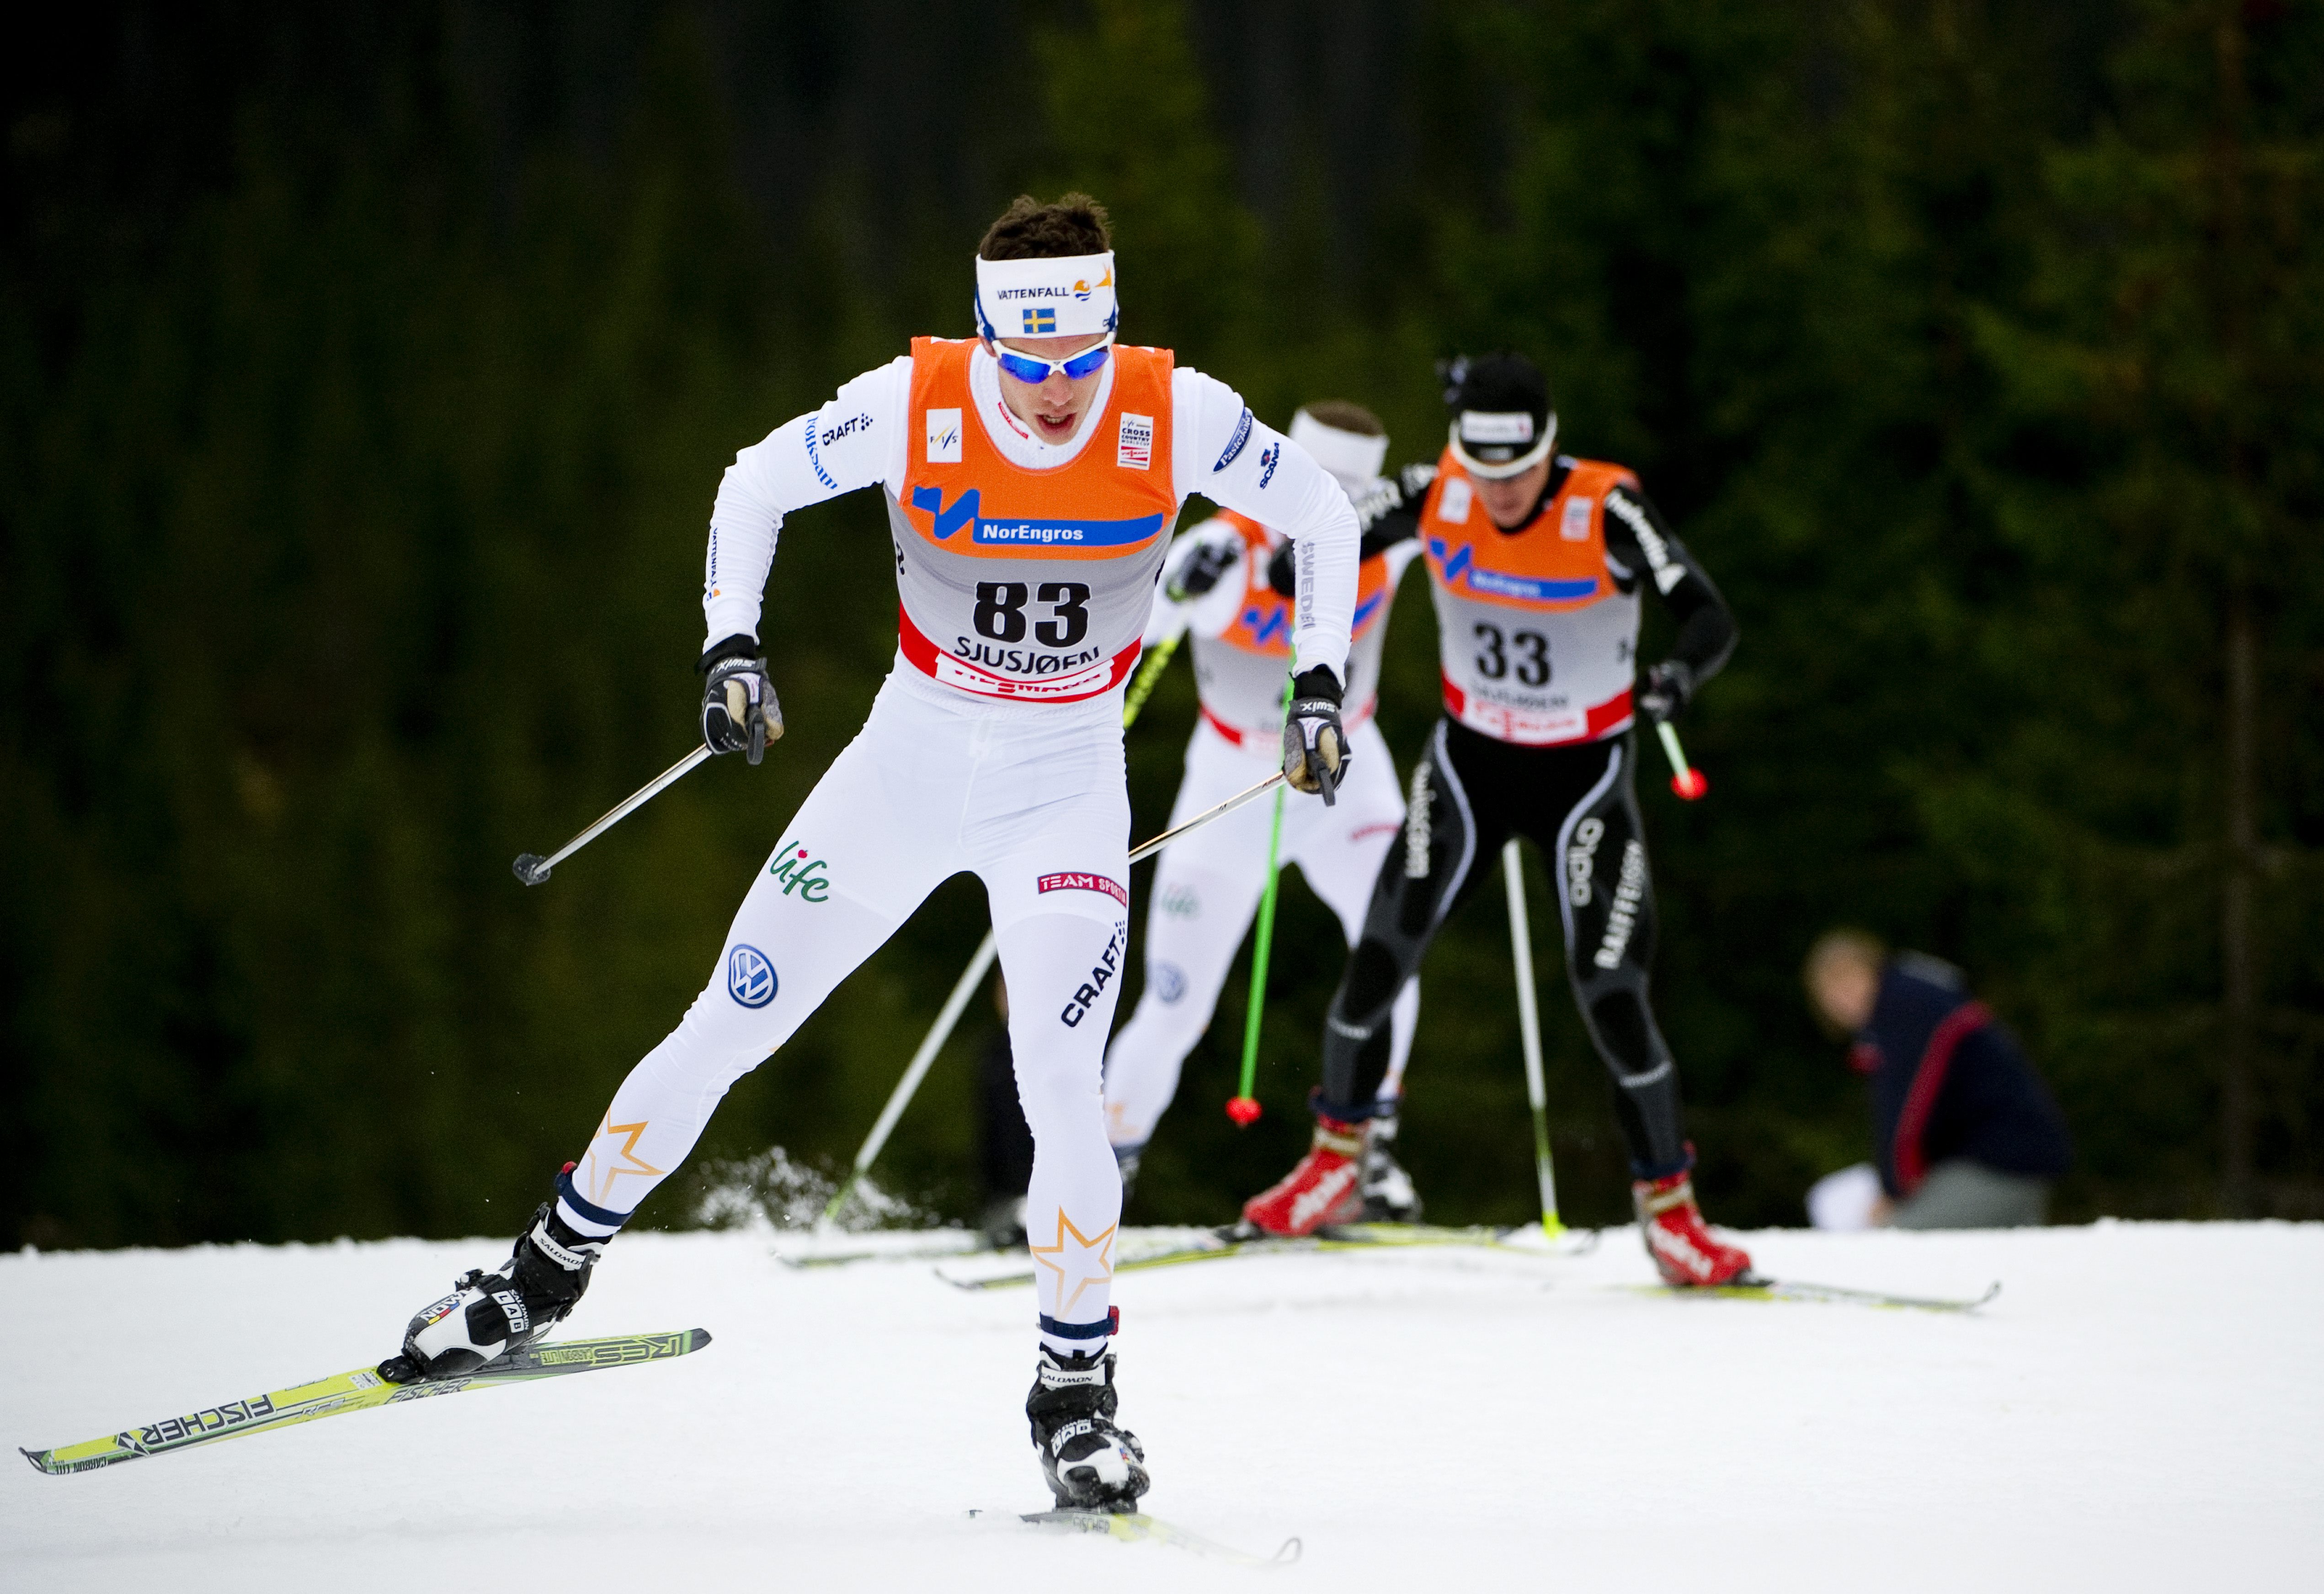 skidor, Charlotte Kalla, Johan Olsson, Anna Haag, Petter Northug, Marcus Hellner